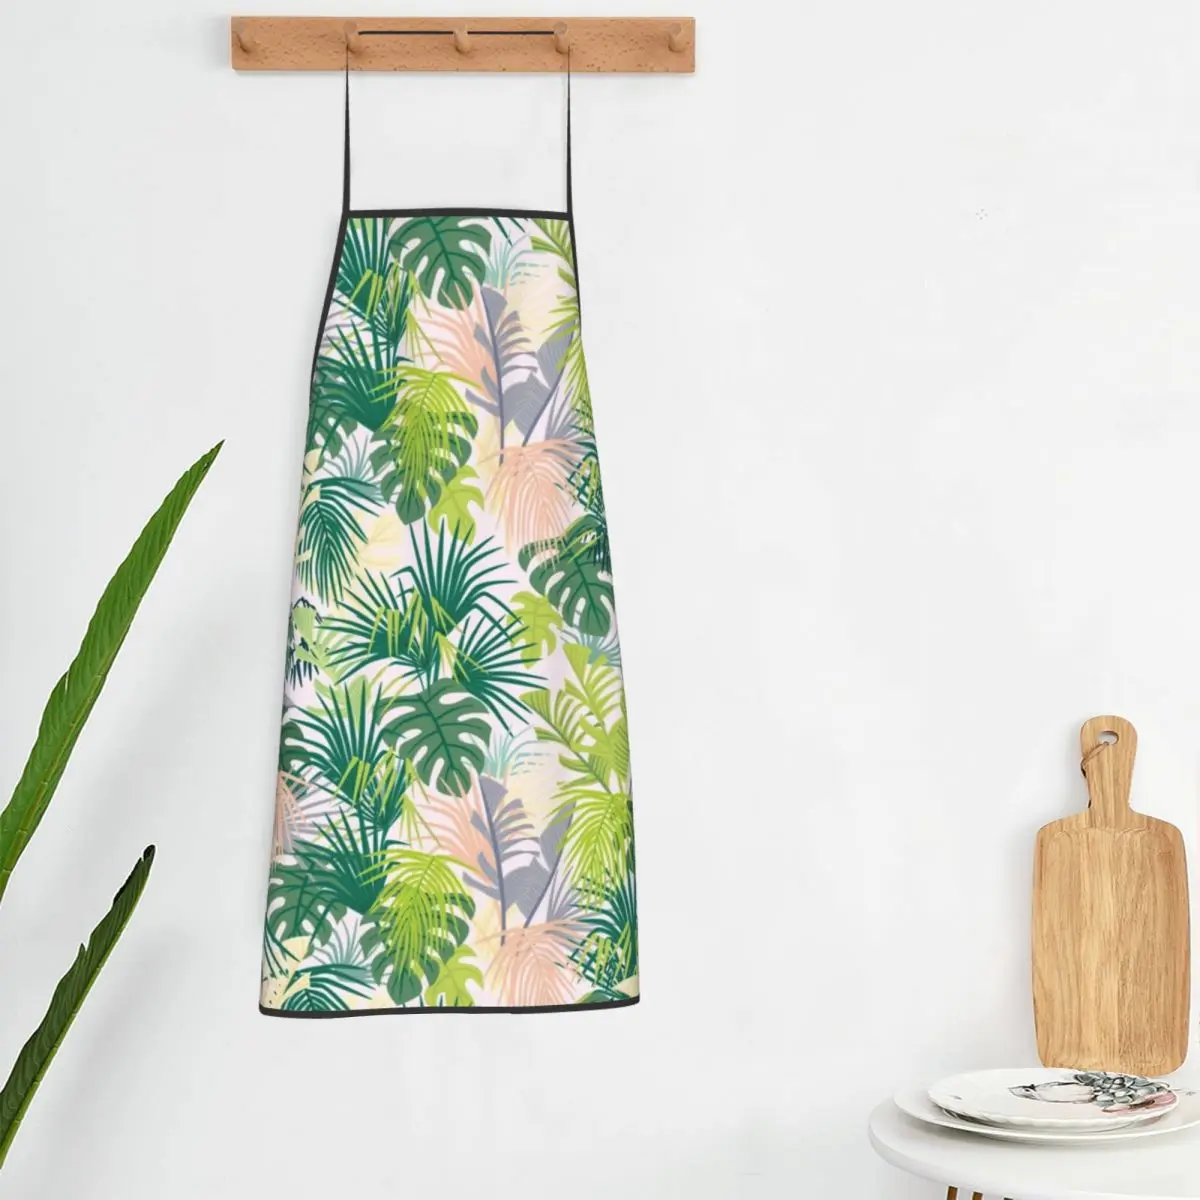 

Фартук тропический с принтом пальмовых листьев, модные кухонные аксессуары для барбекю и маникюра, домашние фартуки без кармана